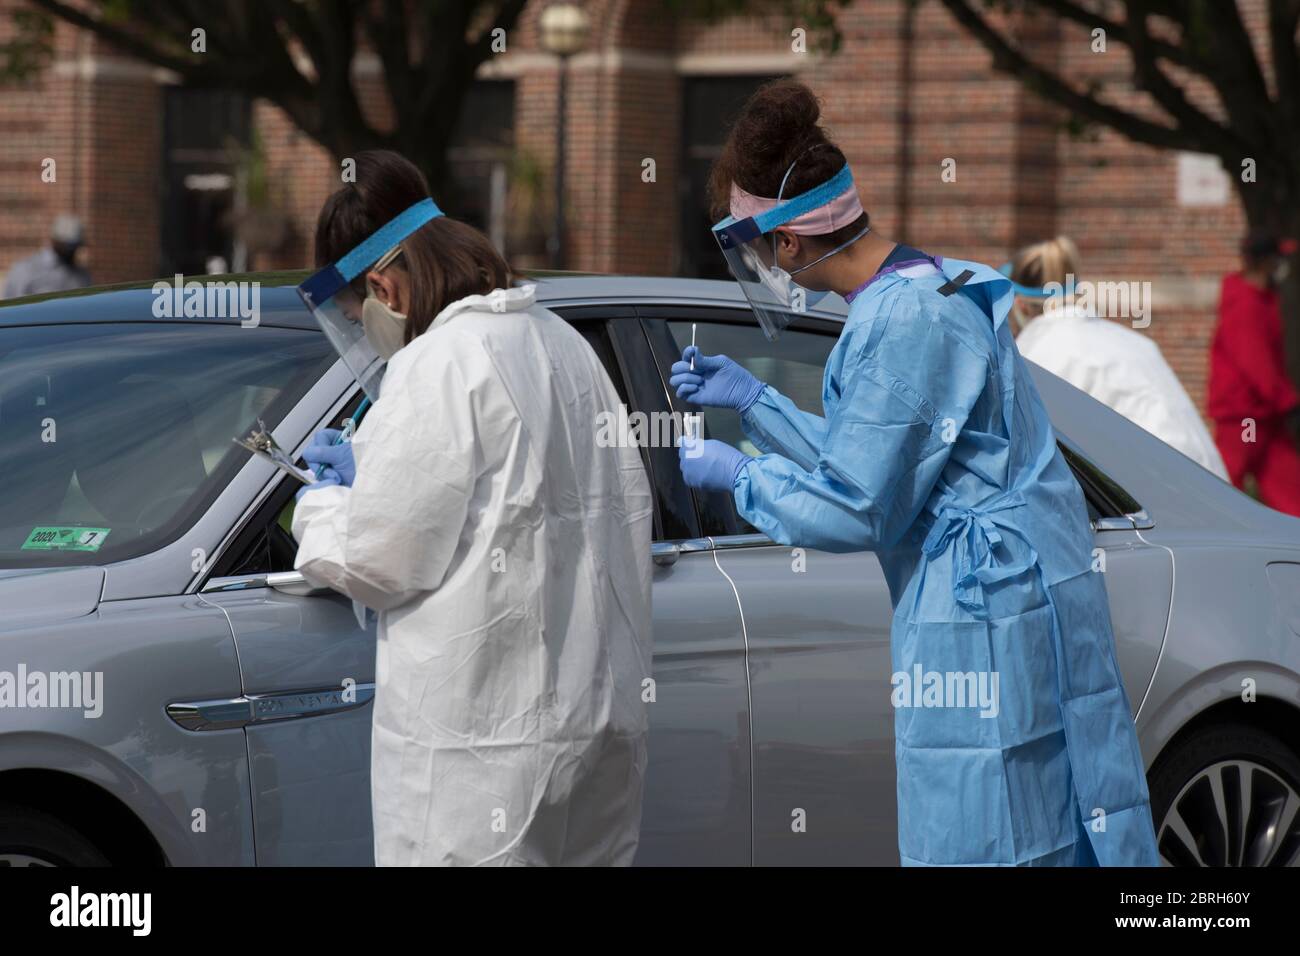 Soldaten der West Virginia National Guard sammeln während des Coronavirus-Tests für Minderheiten und gefährdete Bevölkerungsgruppen am 15. Mai 2020 in Martinsburg, West Virginia, eine Probe von einem Patienten. Stockfoto